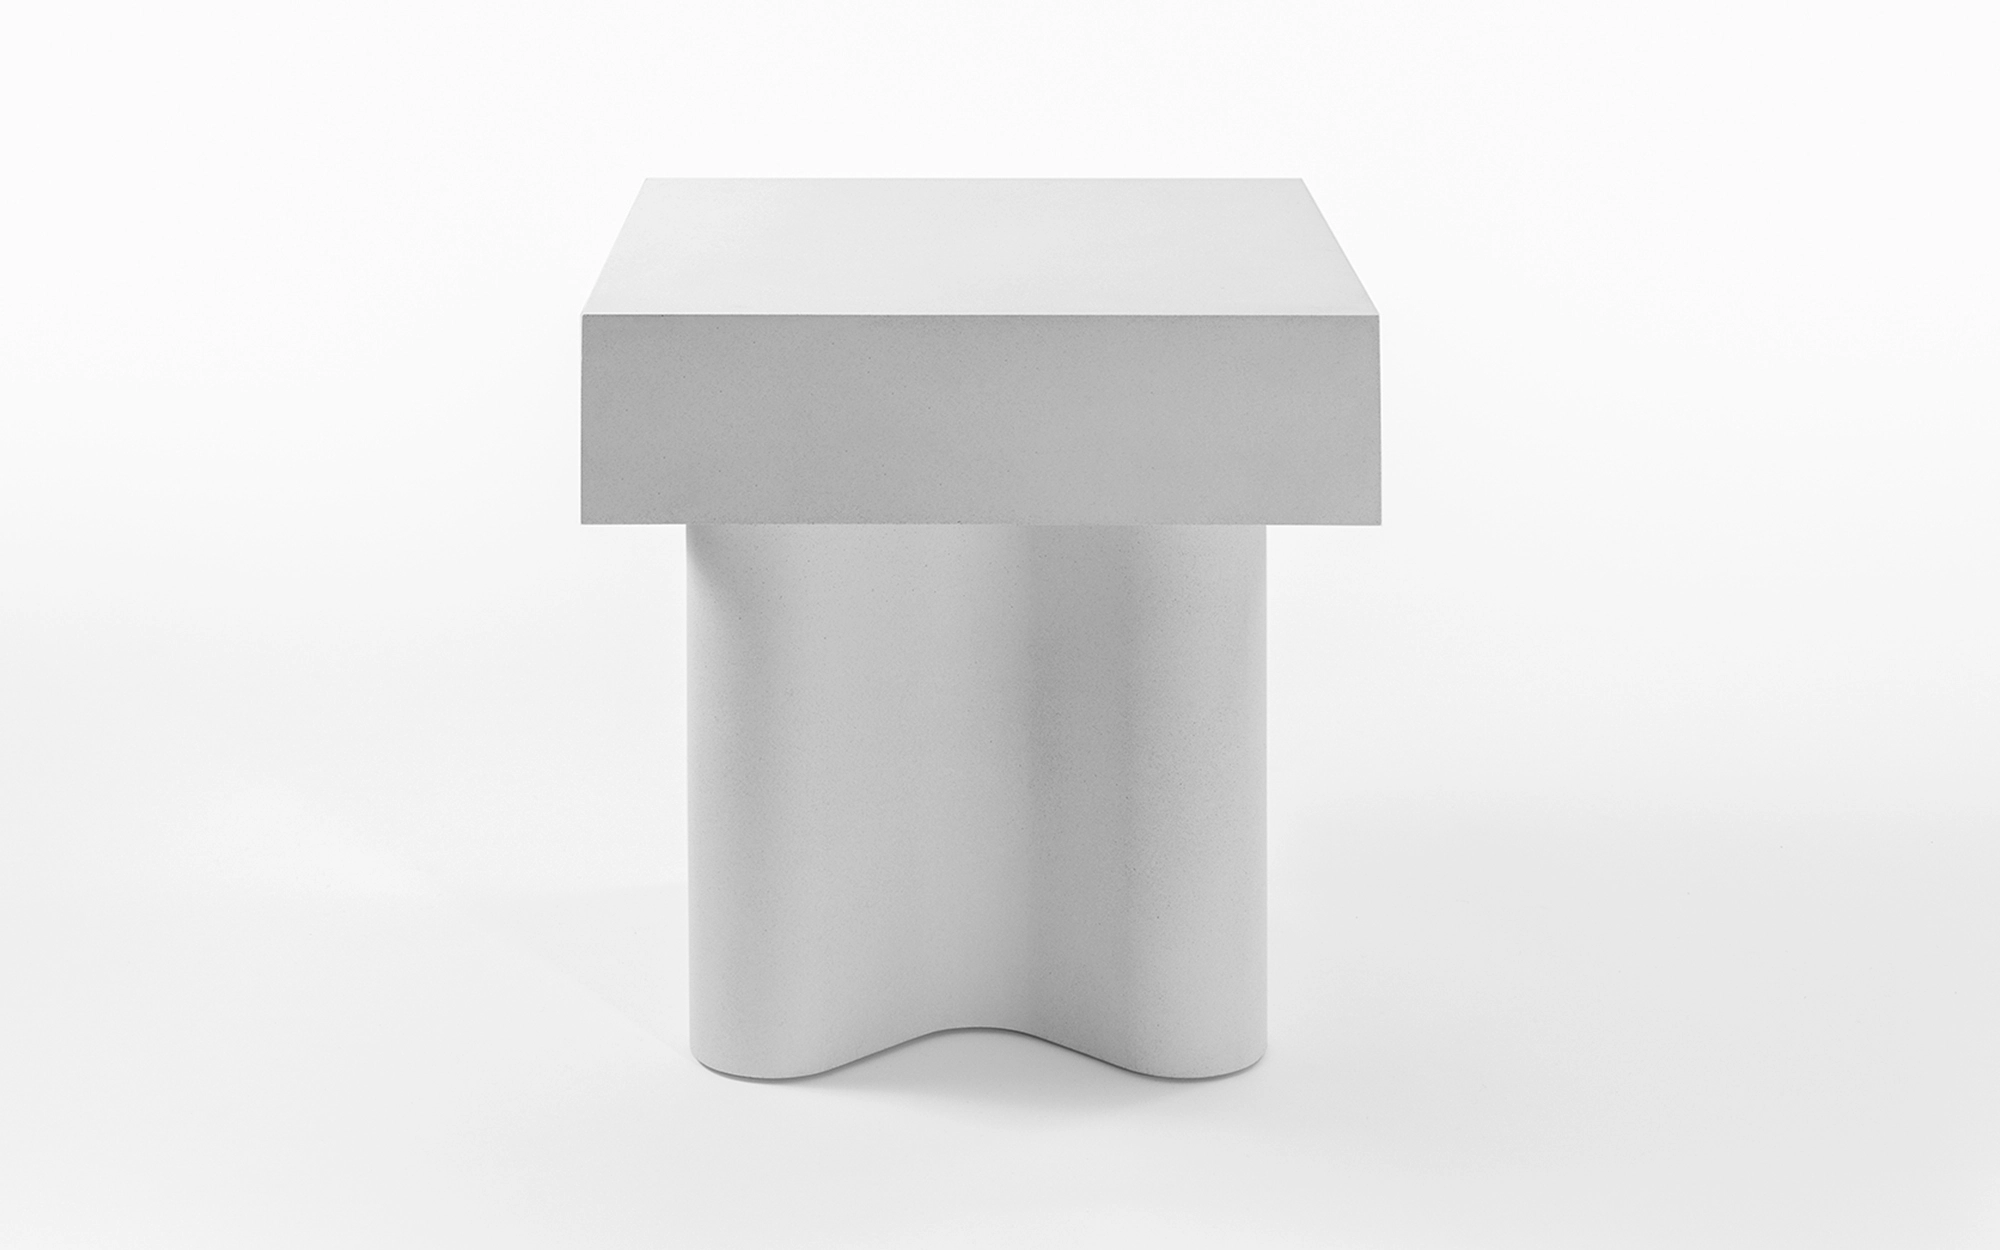 Azo-X side table - François Bauchet - Lucas Ratton x kamel mennour x Galerie kreo @Saint-Tropez.